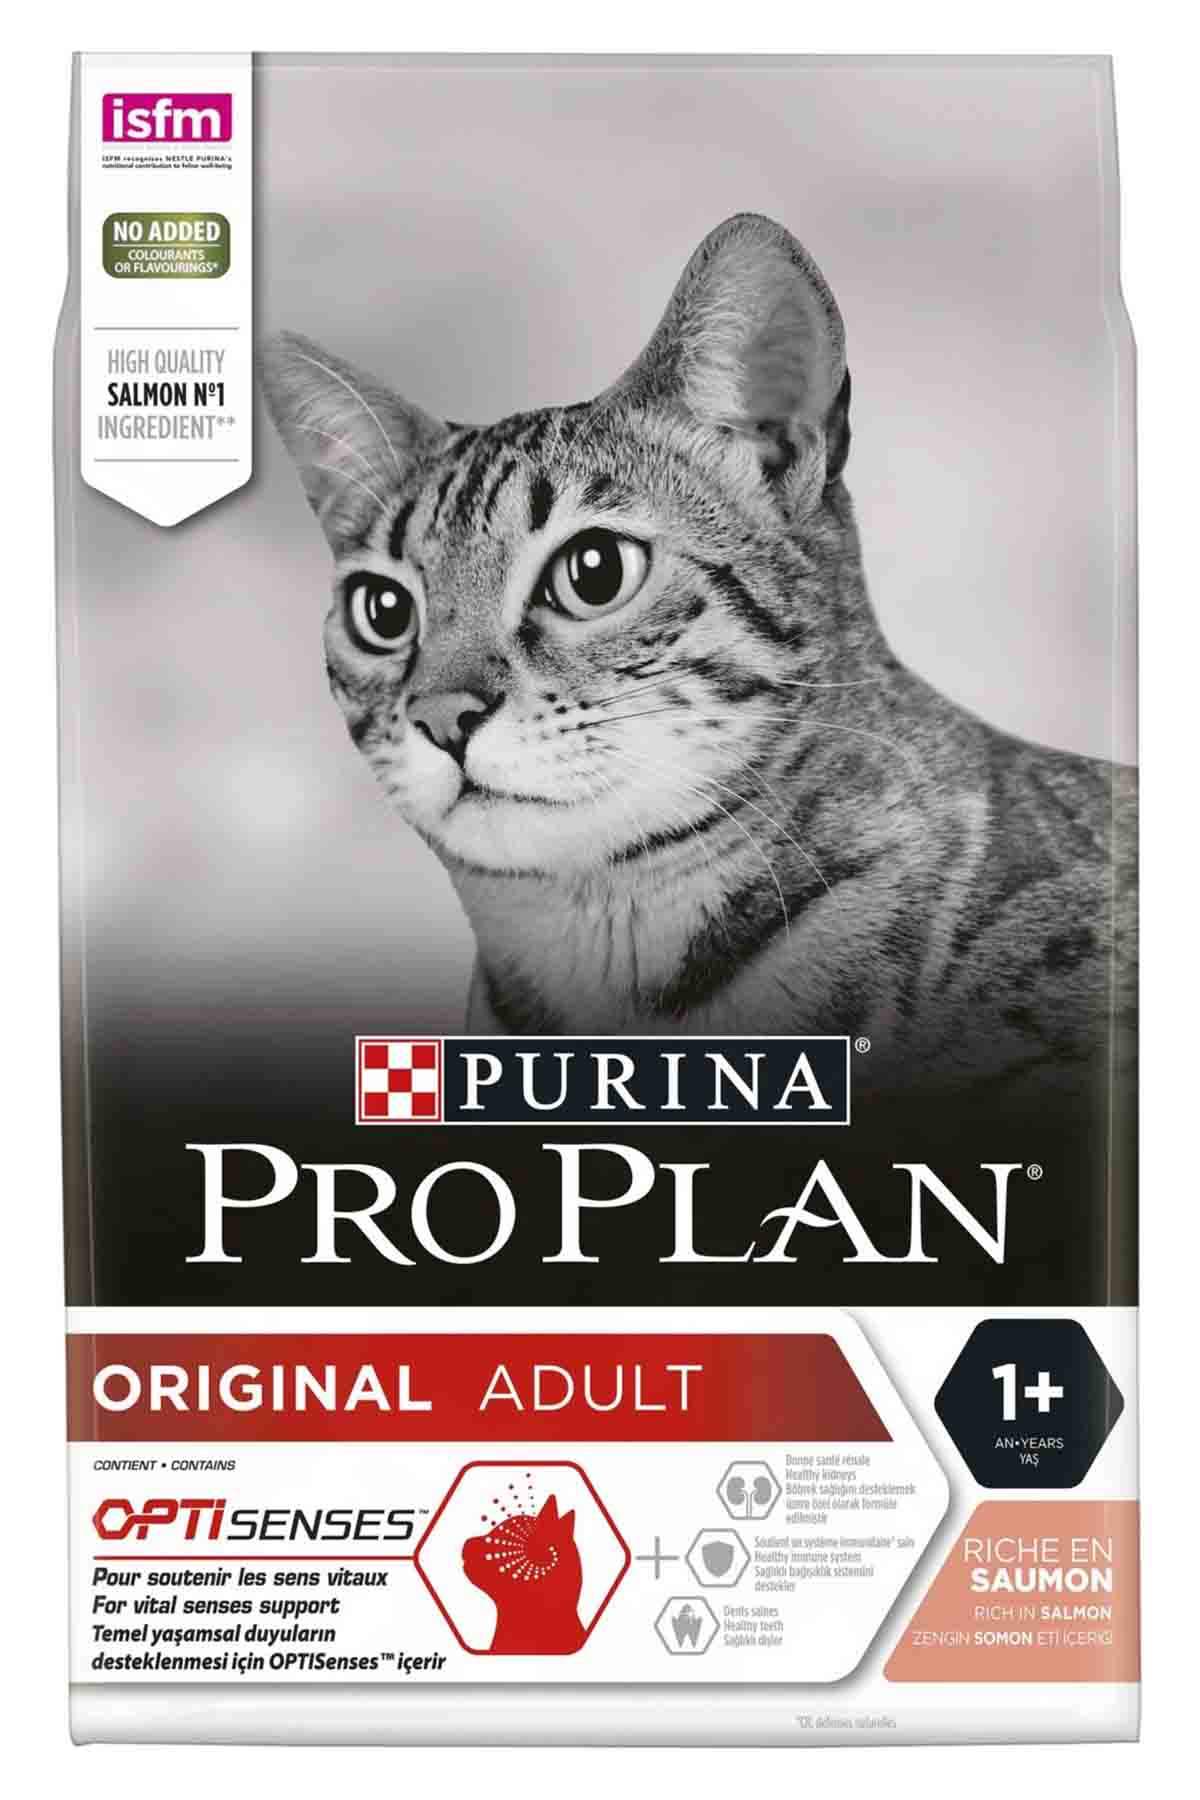 Pro Plan Somon ve Pirinçli Yetişkin Kedi Maması 1,5kg